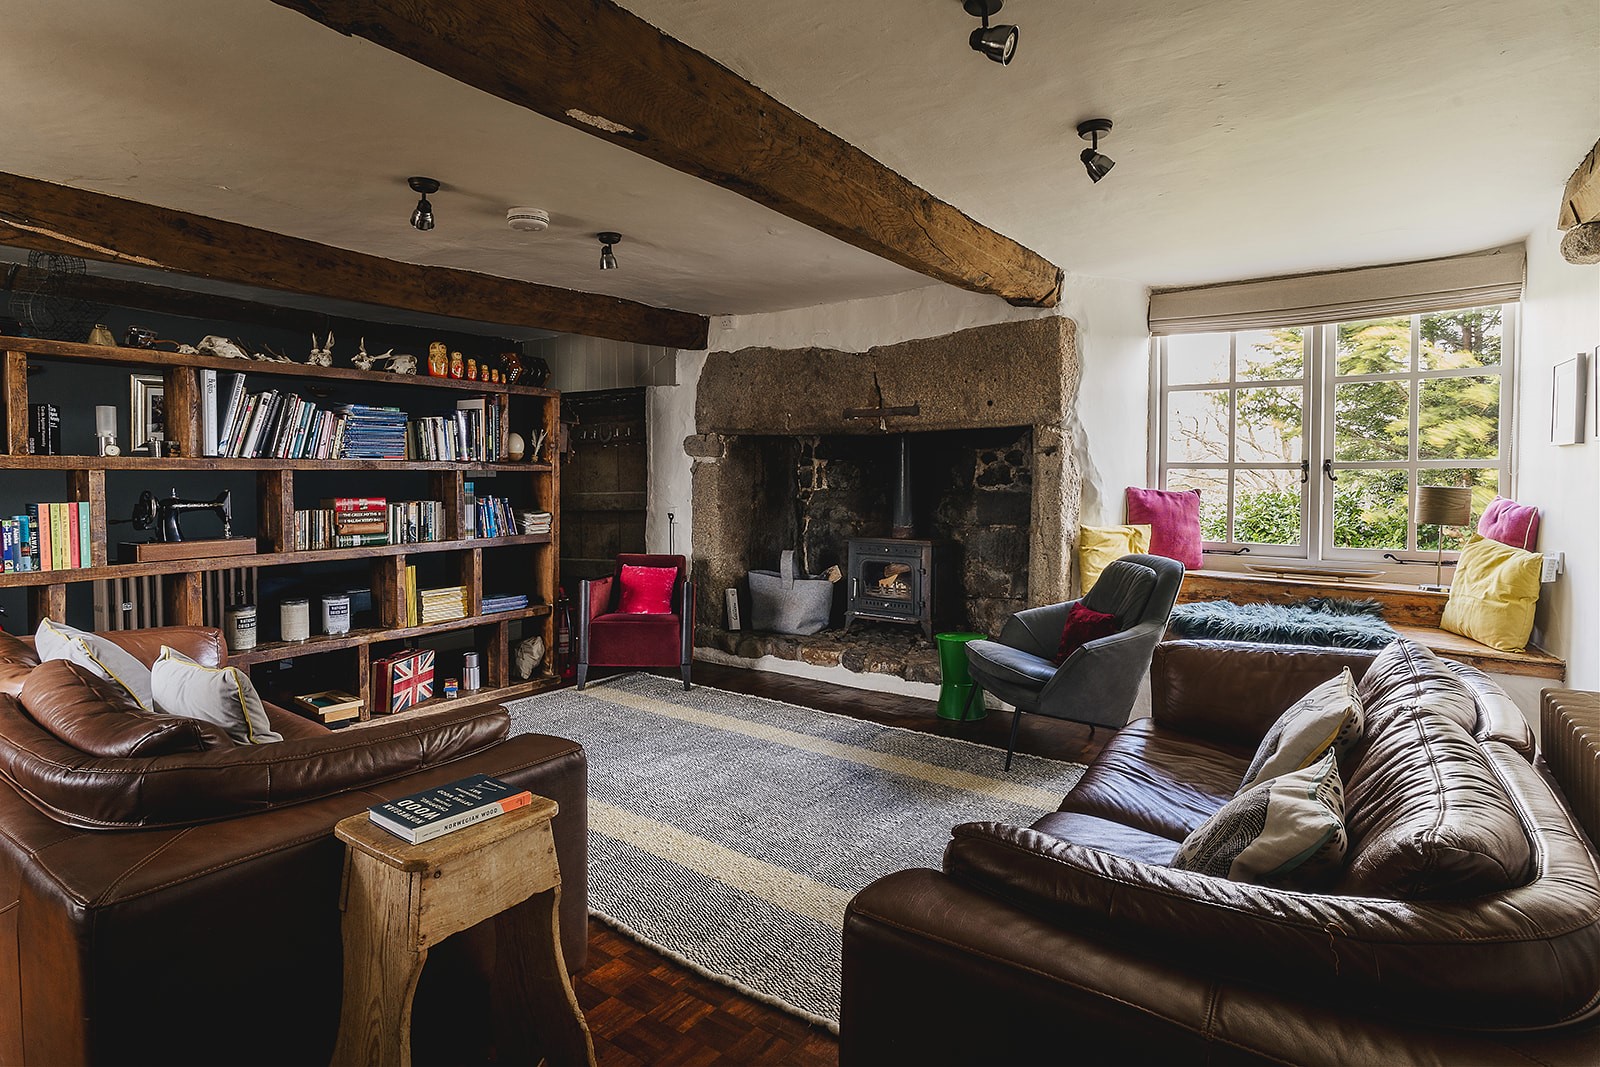 Weeke Barton – gorgeous inglenook fireplace with wood stove